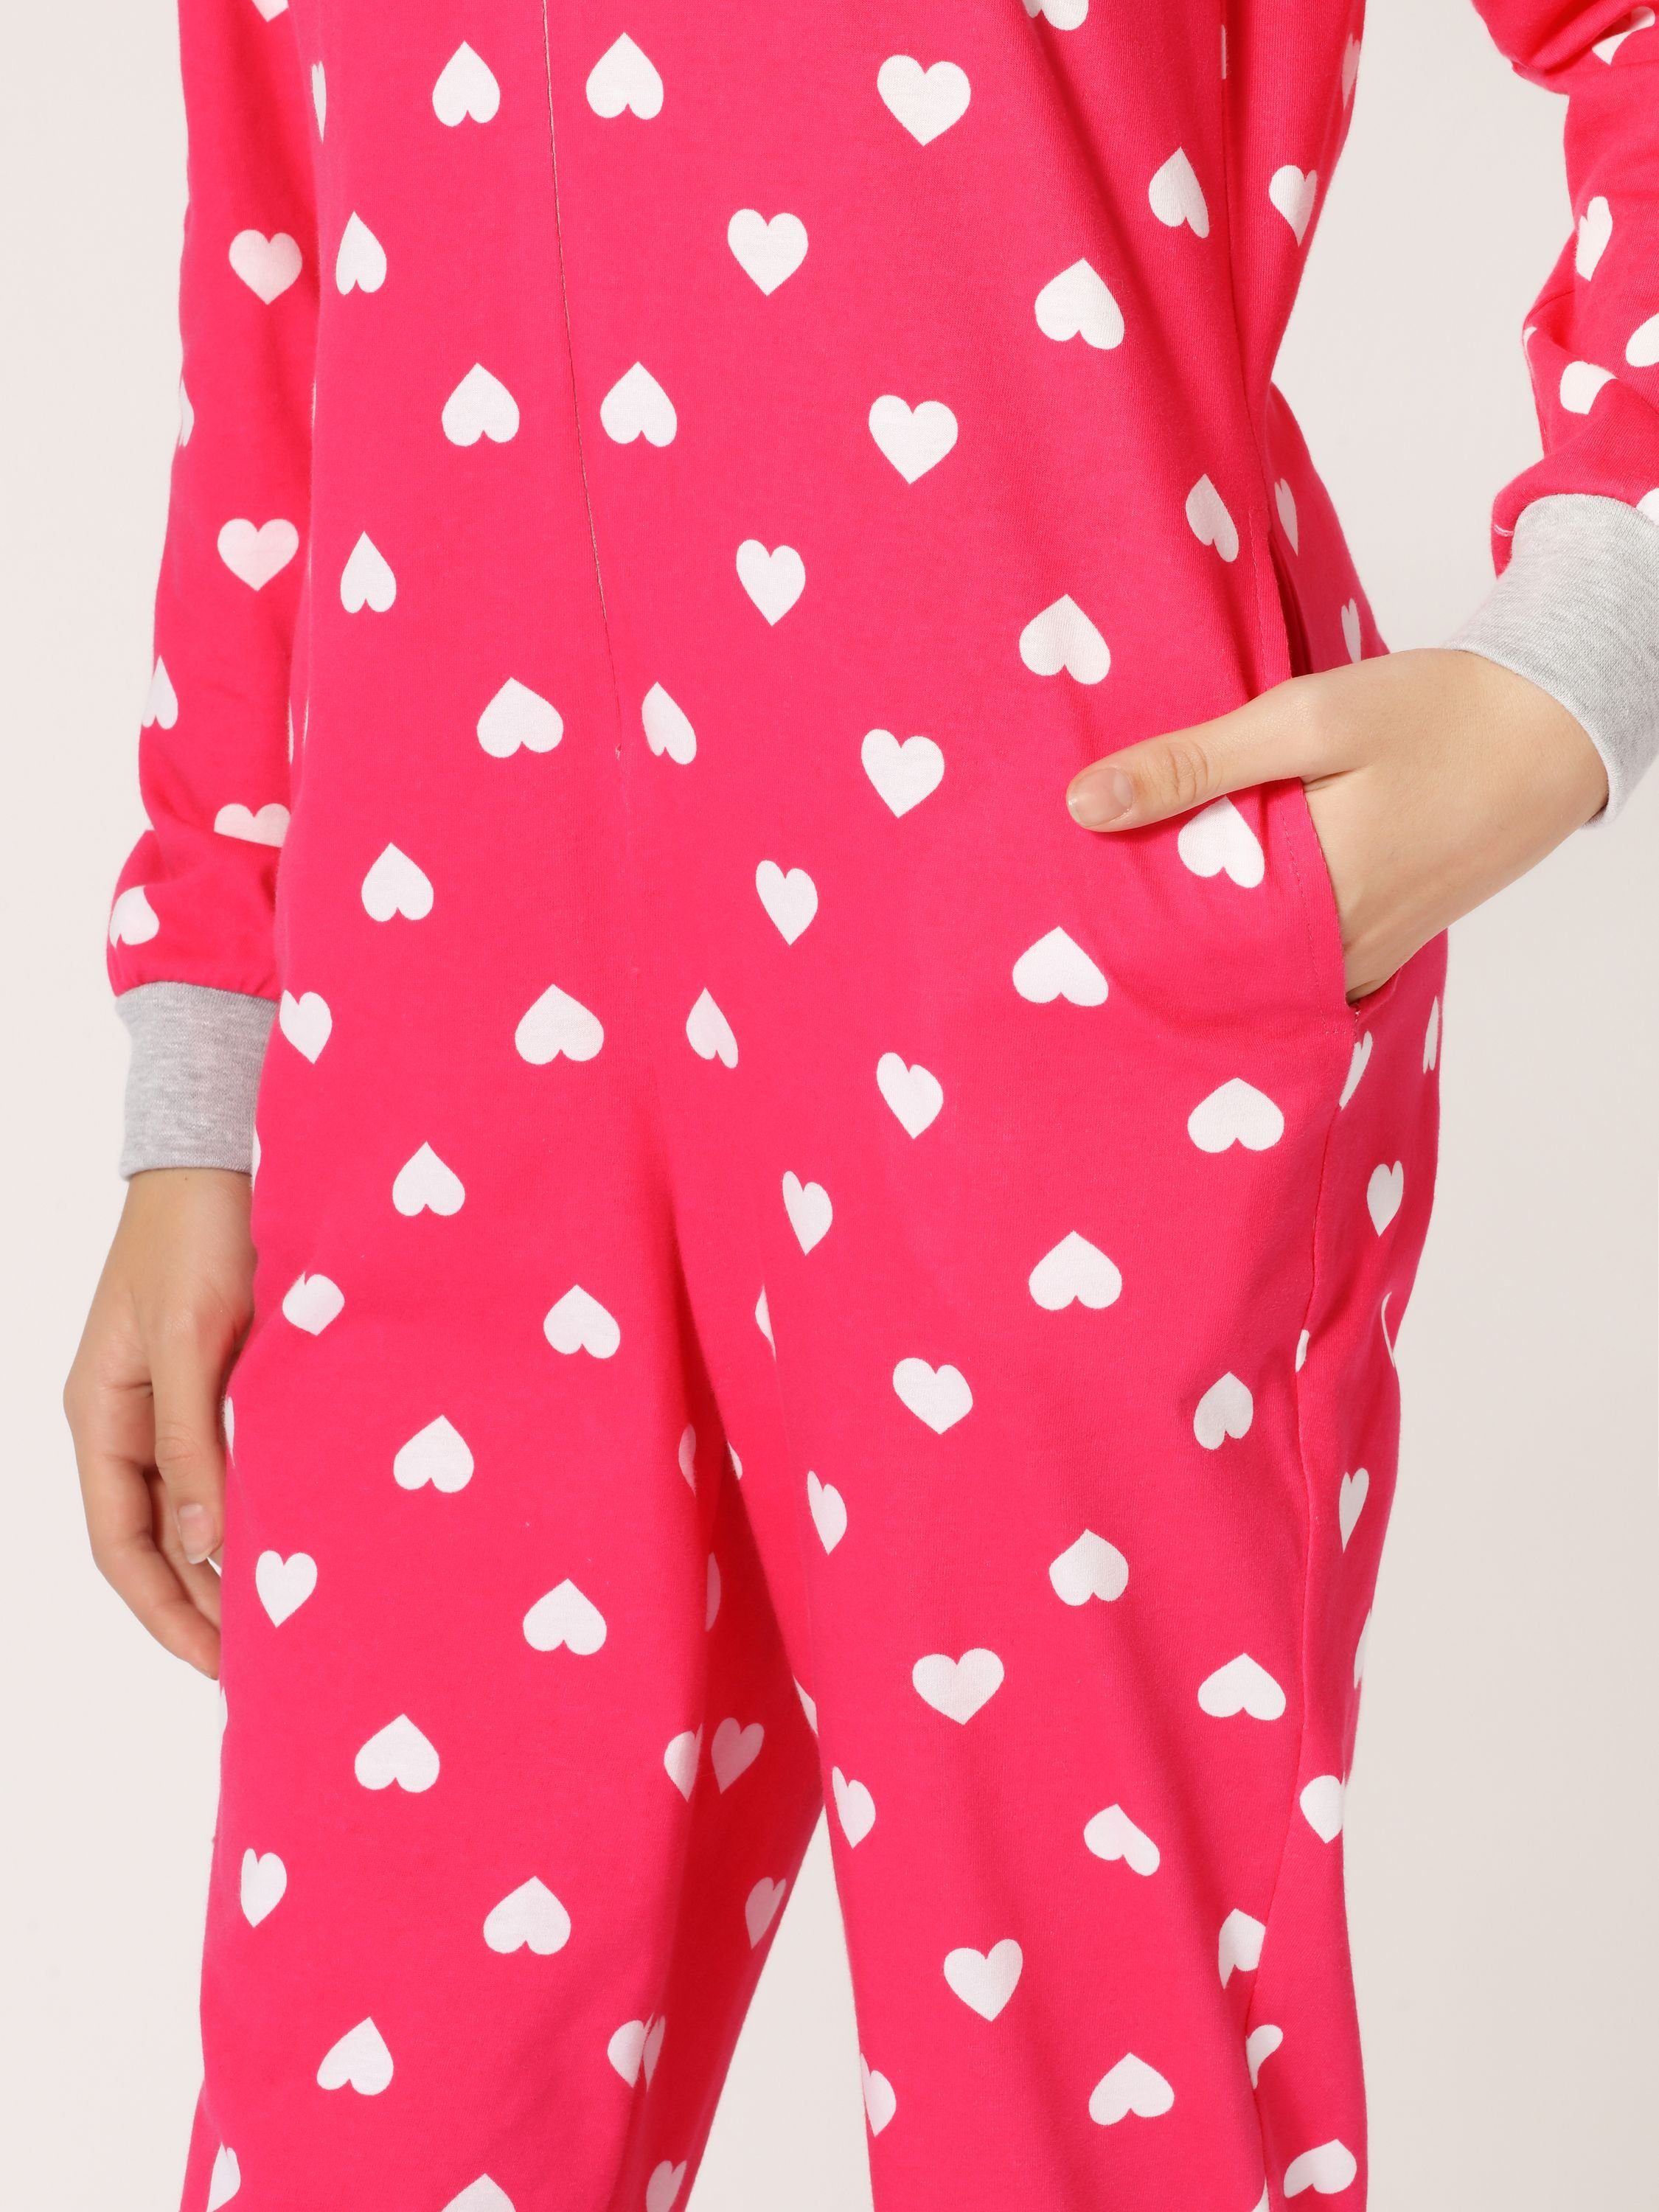 Mädchen Style Jugend Schlafanzug Rosa/Herzen MS10-235 Merry Schlafanzug Schlafoverall